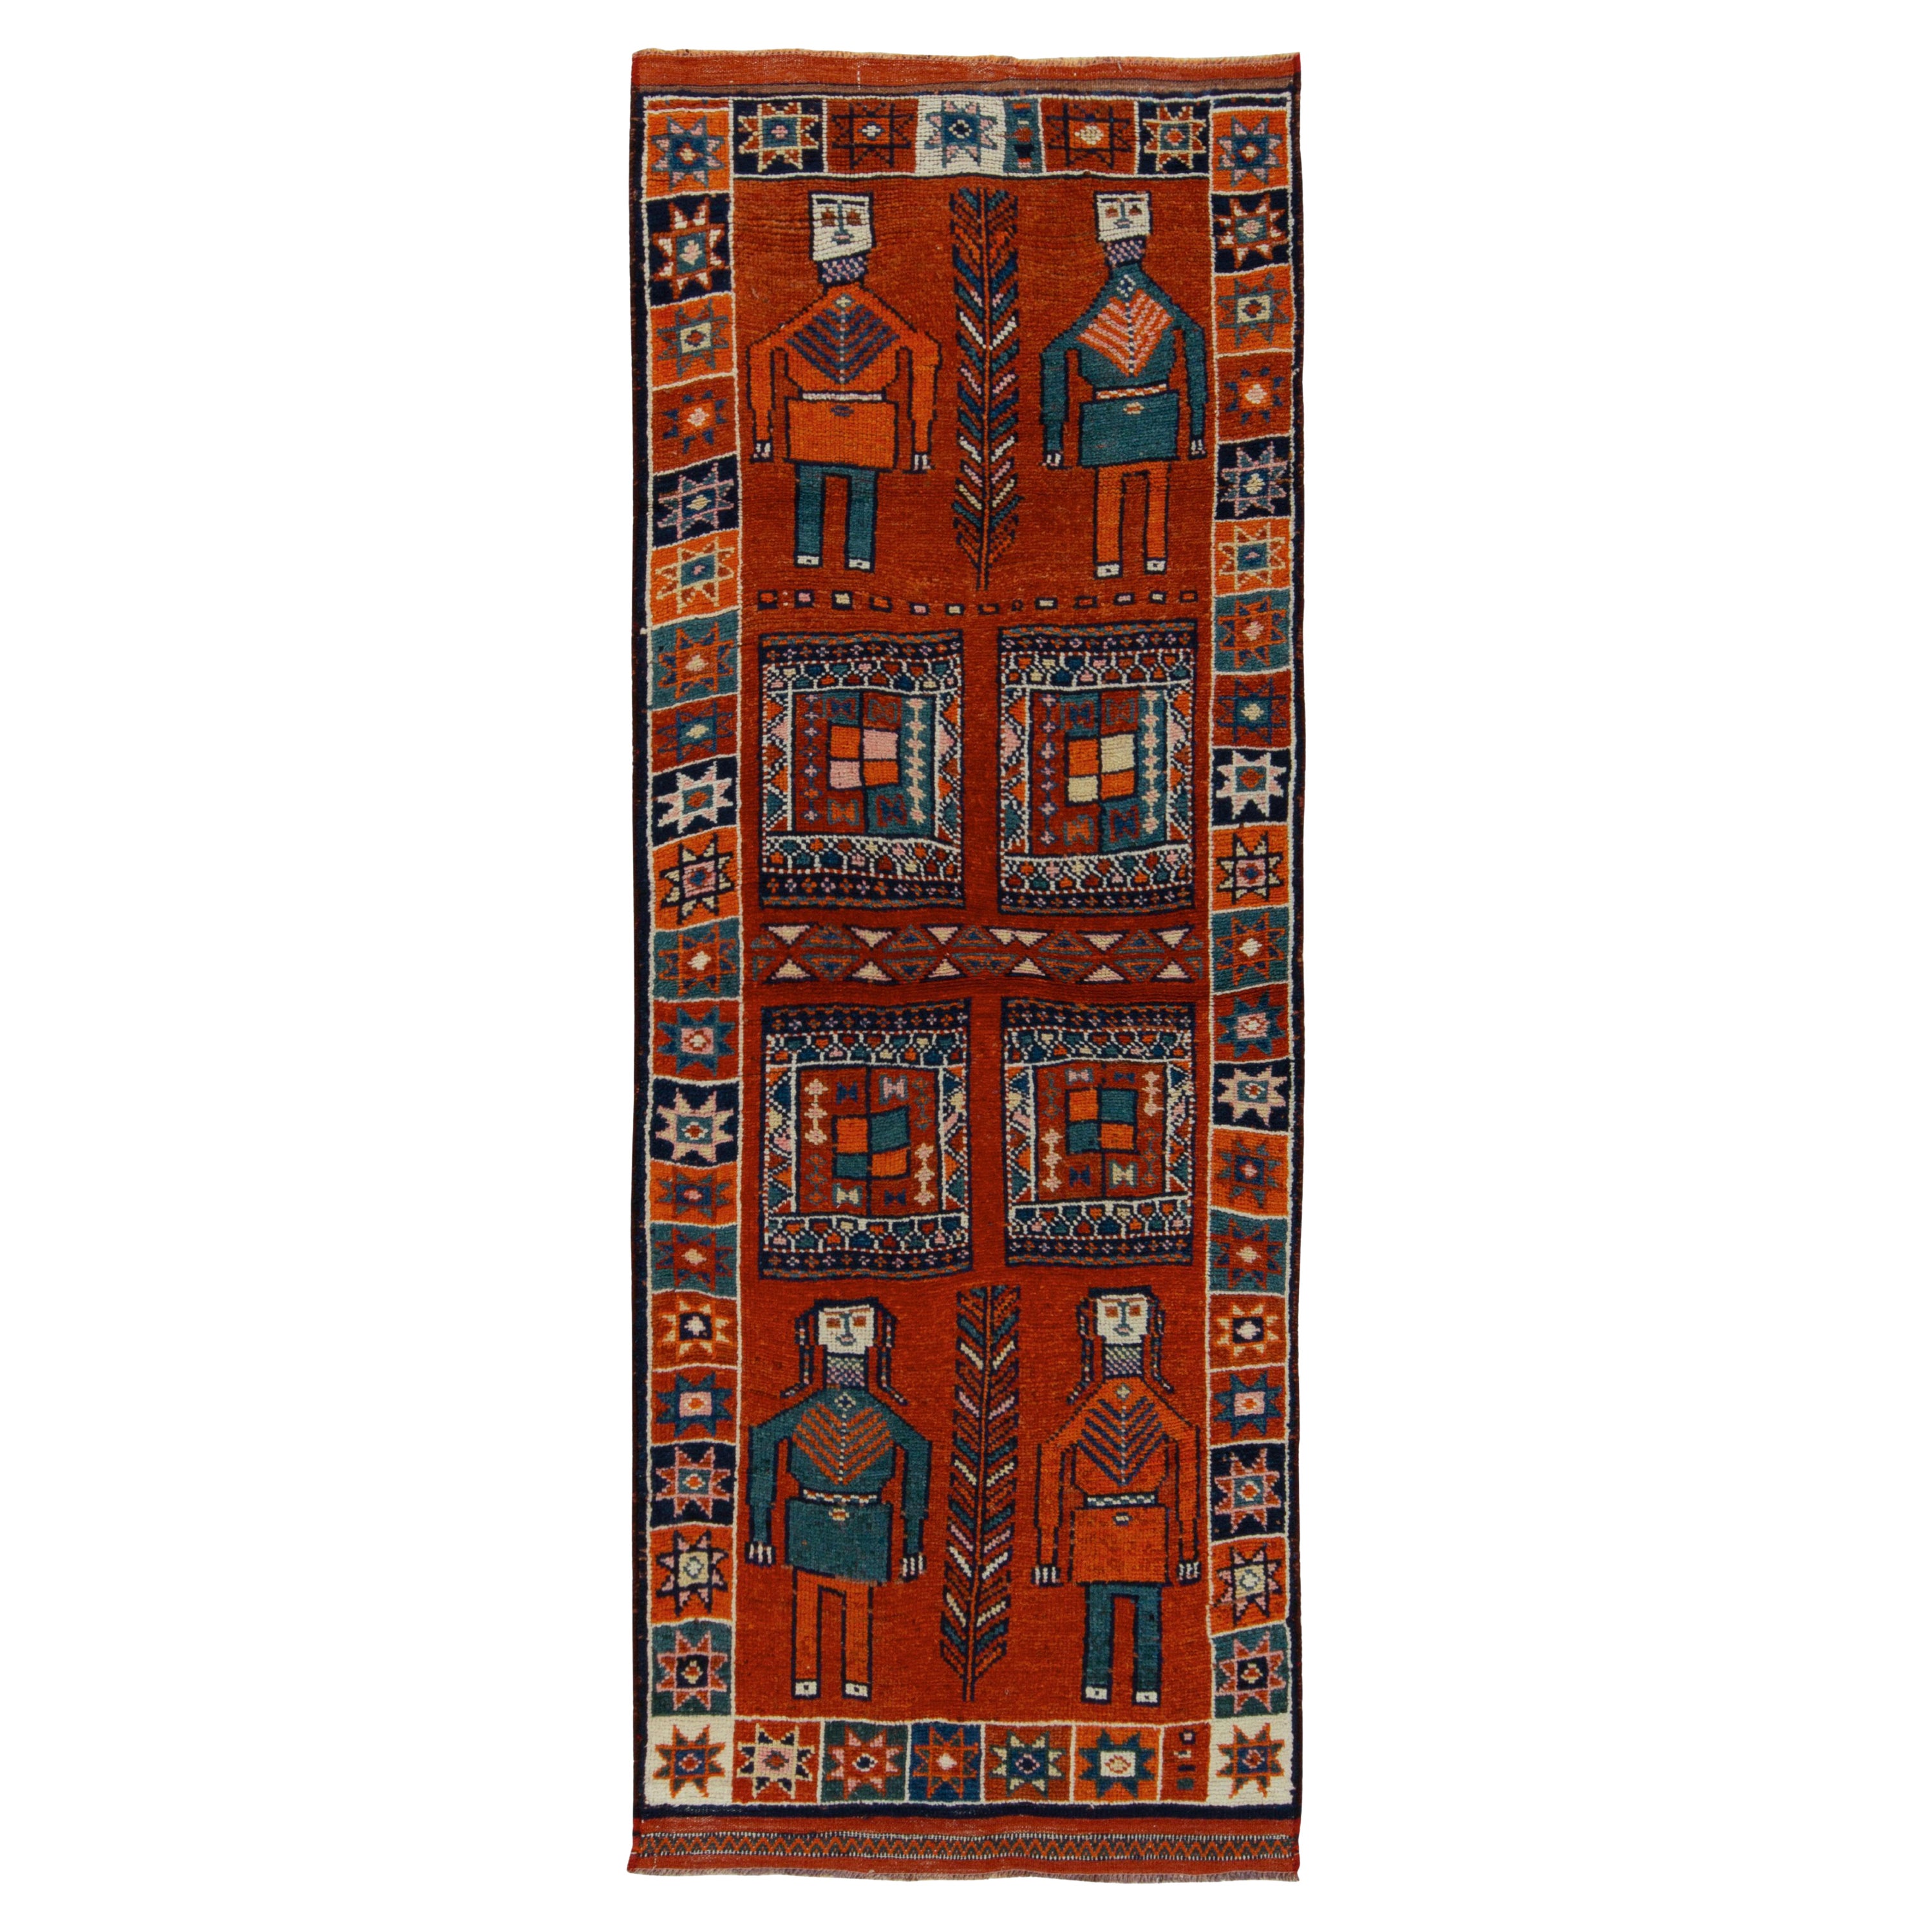 1950er Jahre Vintage Tribal Teppich in Orange, Rot und Blau mit Bildmuster